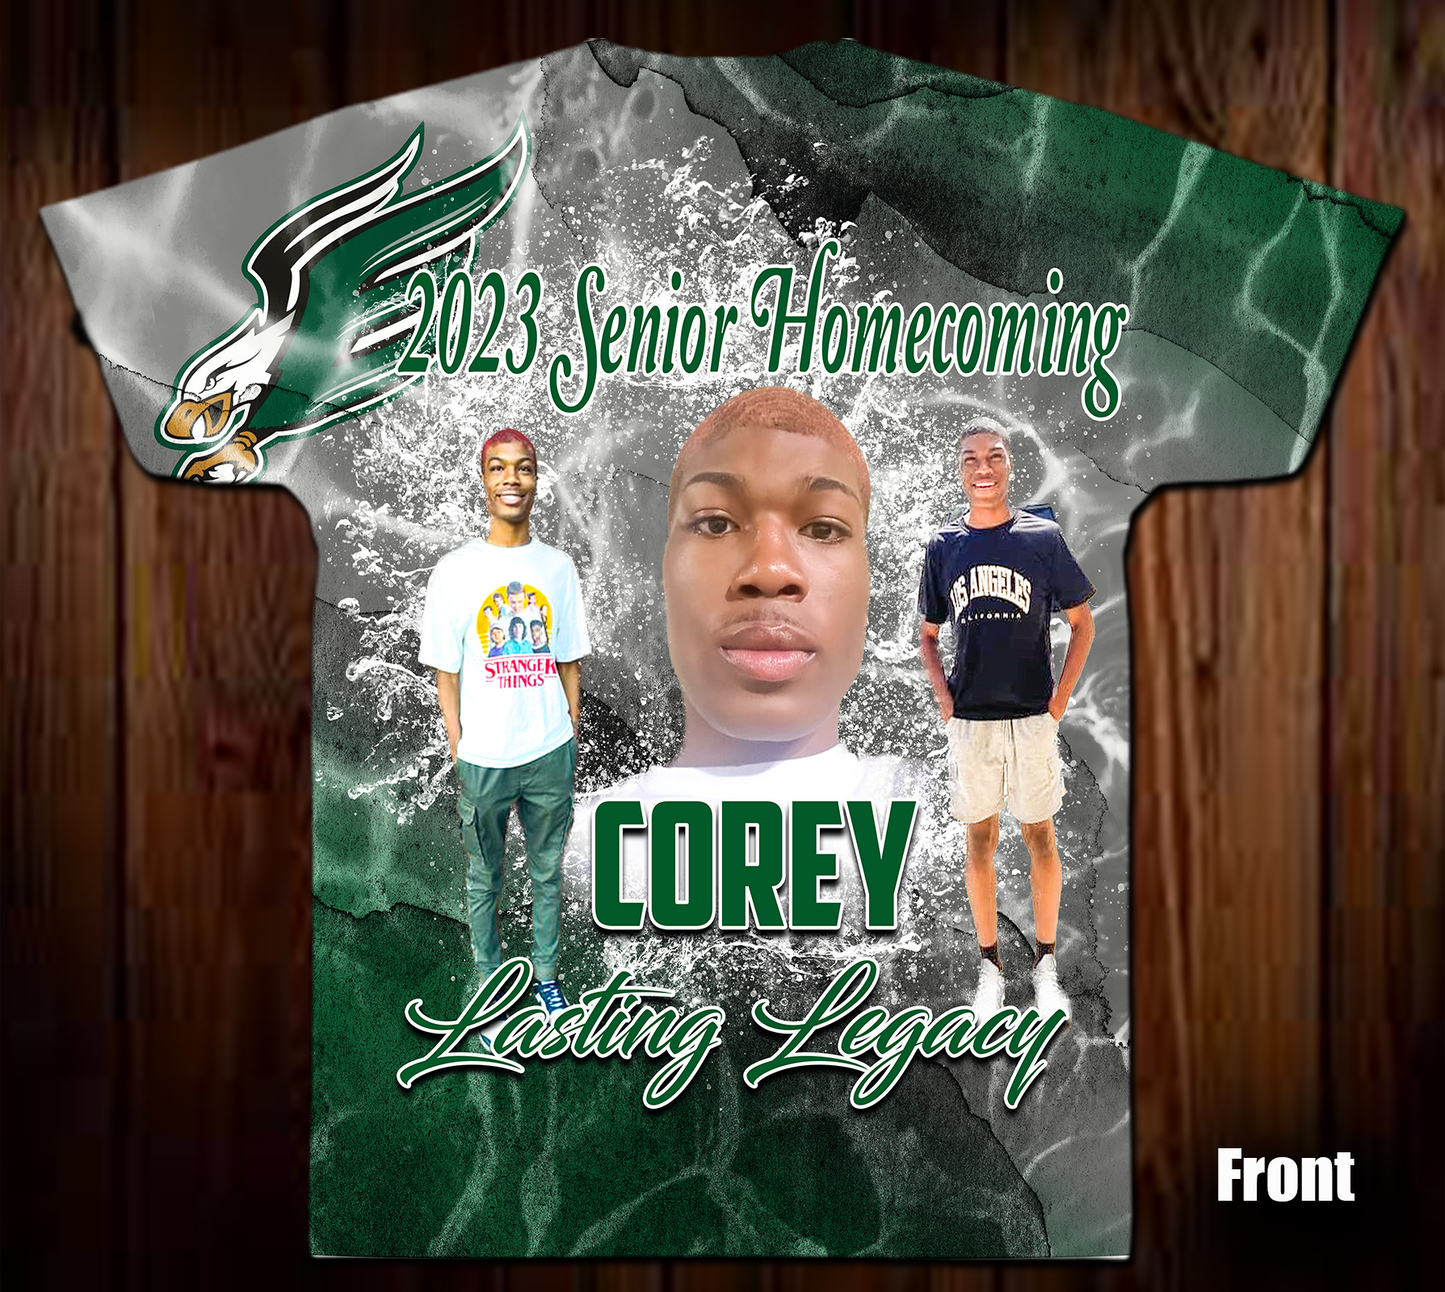 Corey Homecoming King